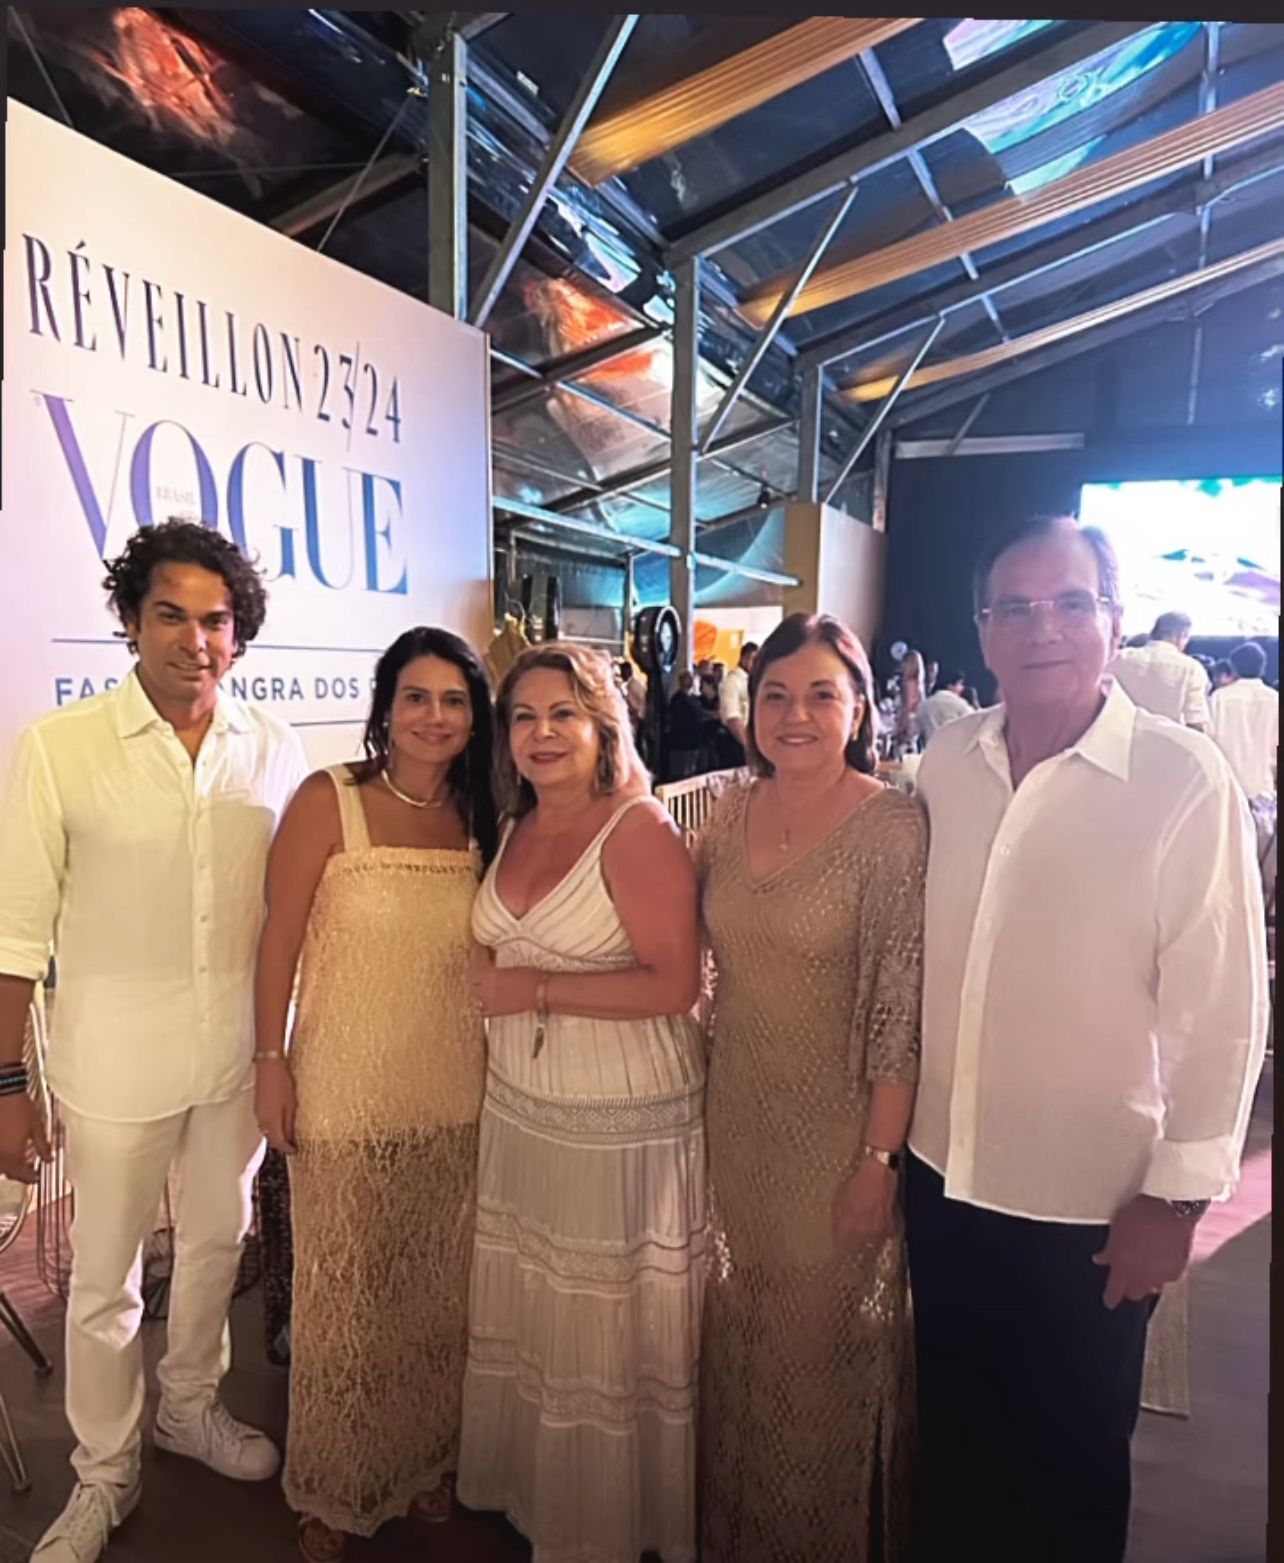 Cearenses curtem virada de ano no Réveillon Vogue, em Angra dos Reis (RJ)